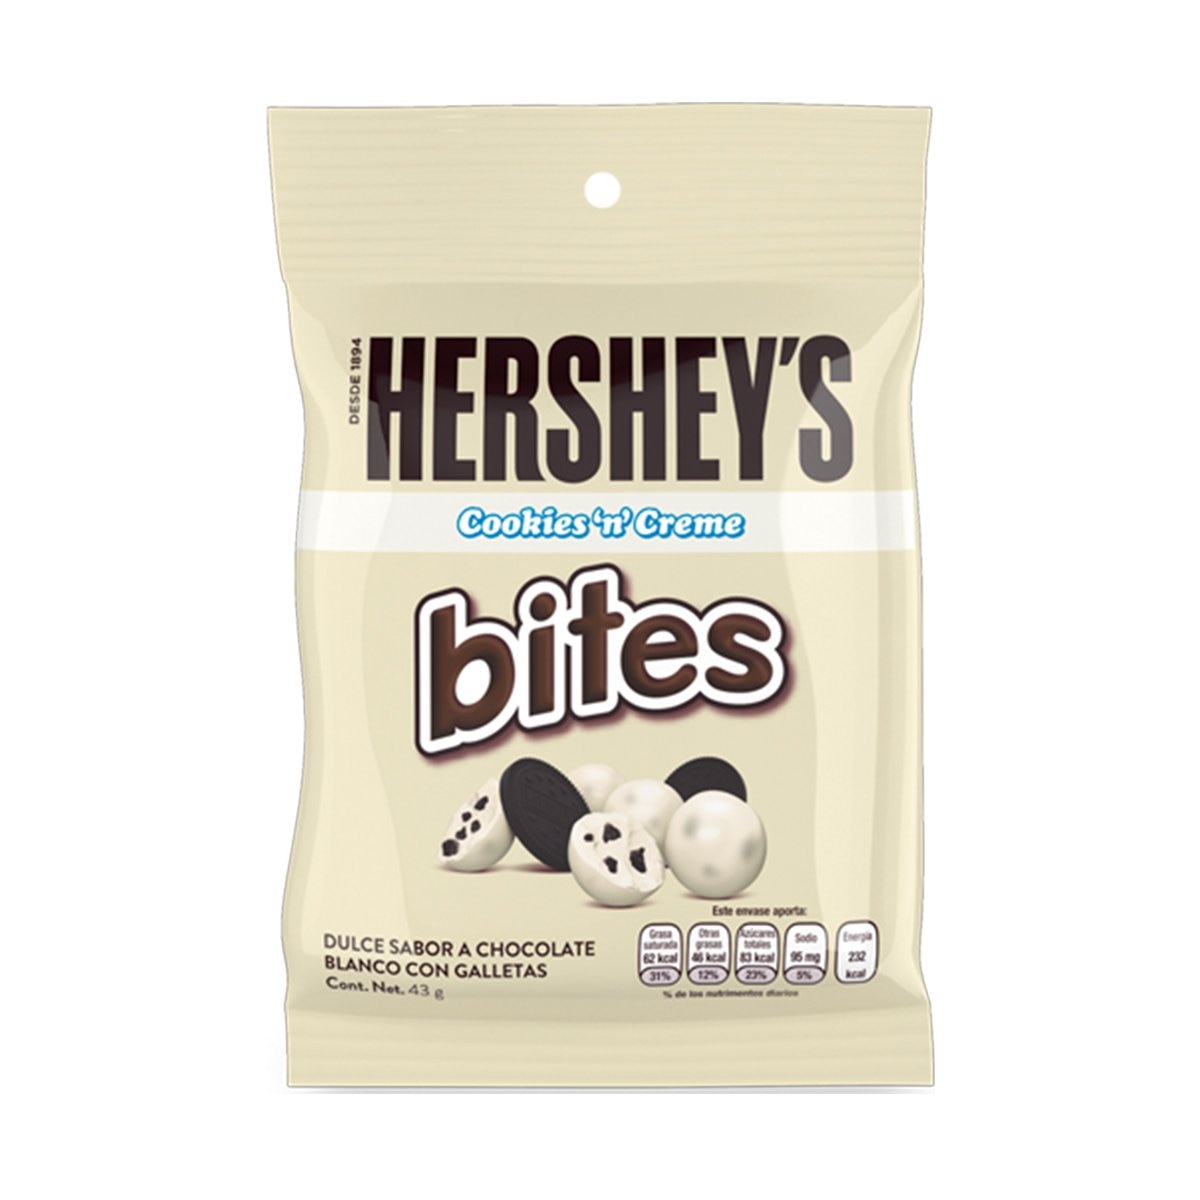 Chocolate Bites Cookies &amp; Cream Hersheys 43 Grs